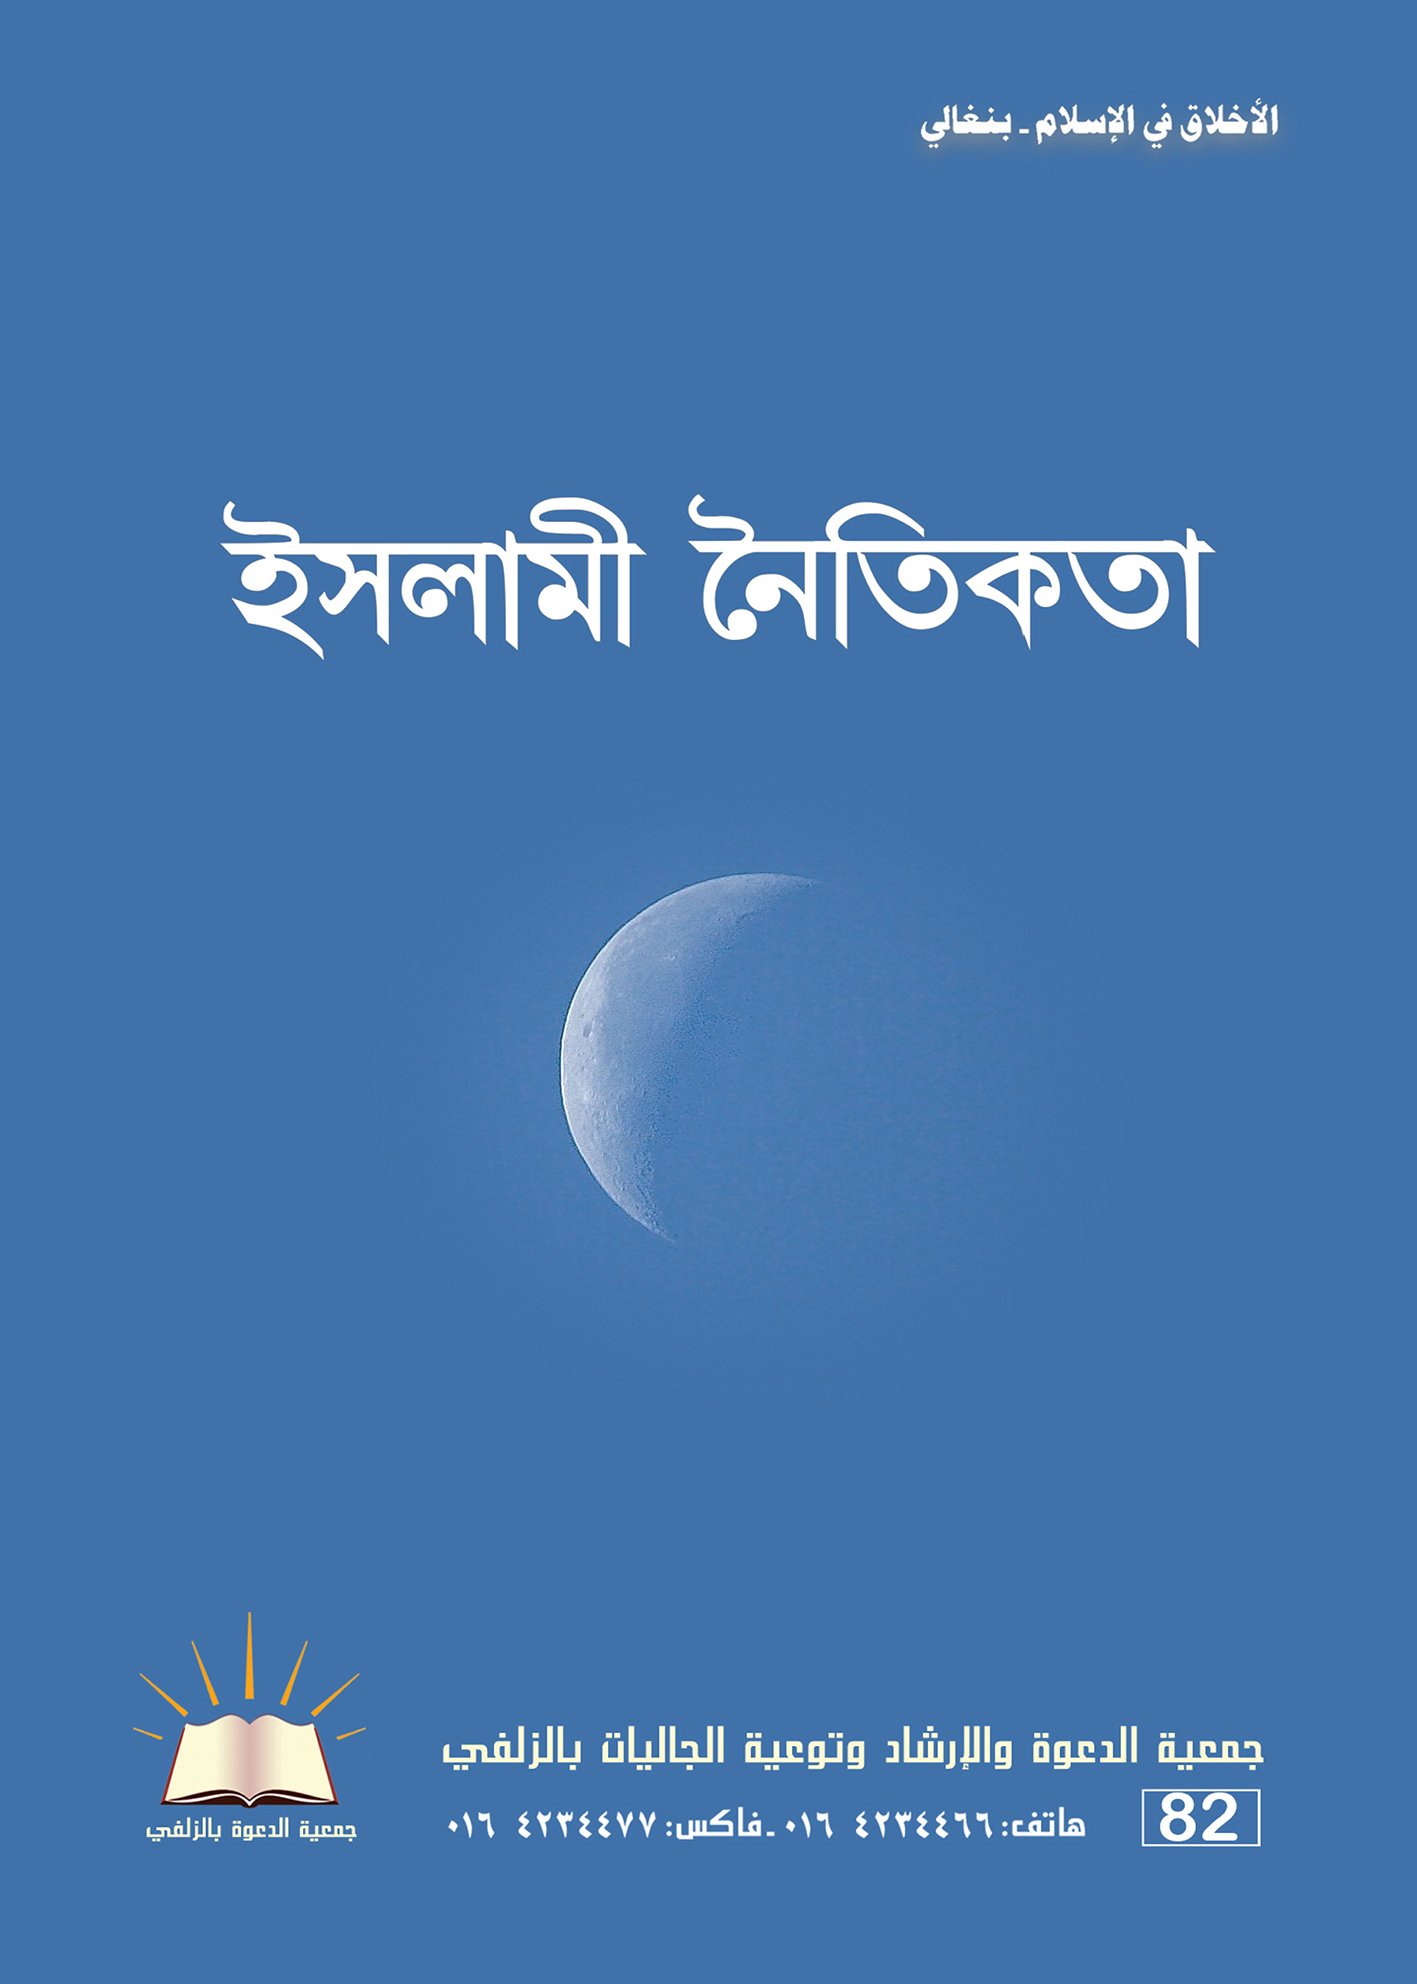 الأخلاق في الإسلام - بنغالي